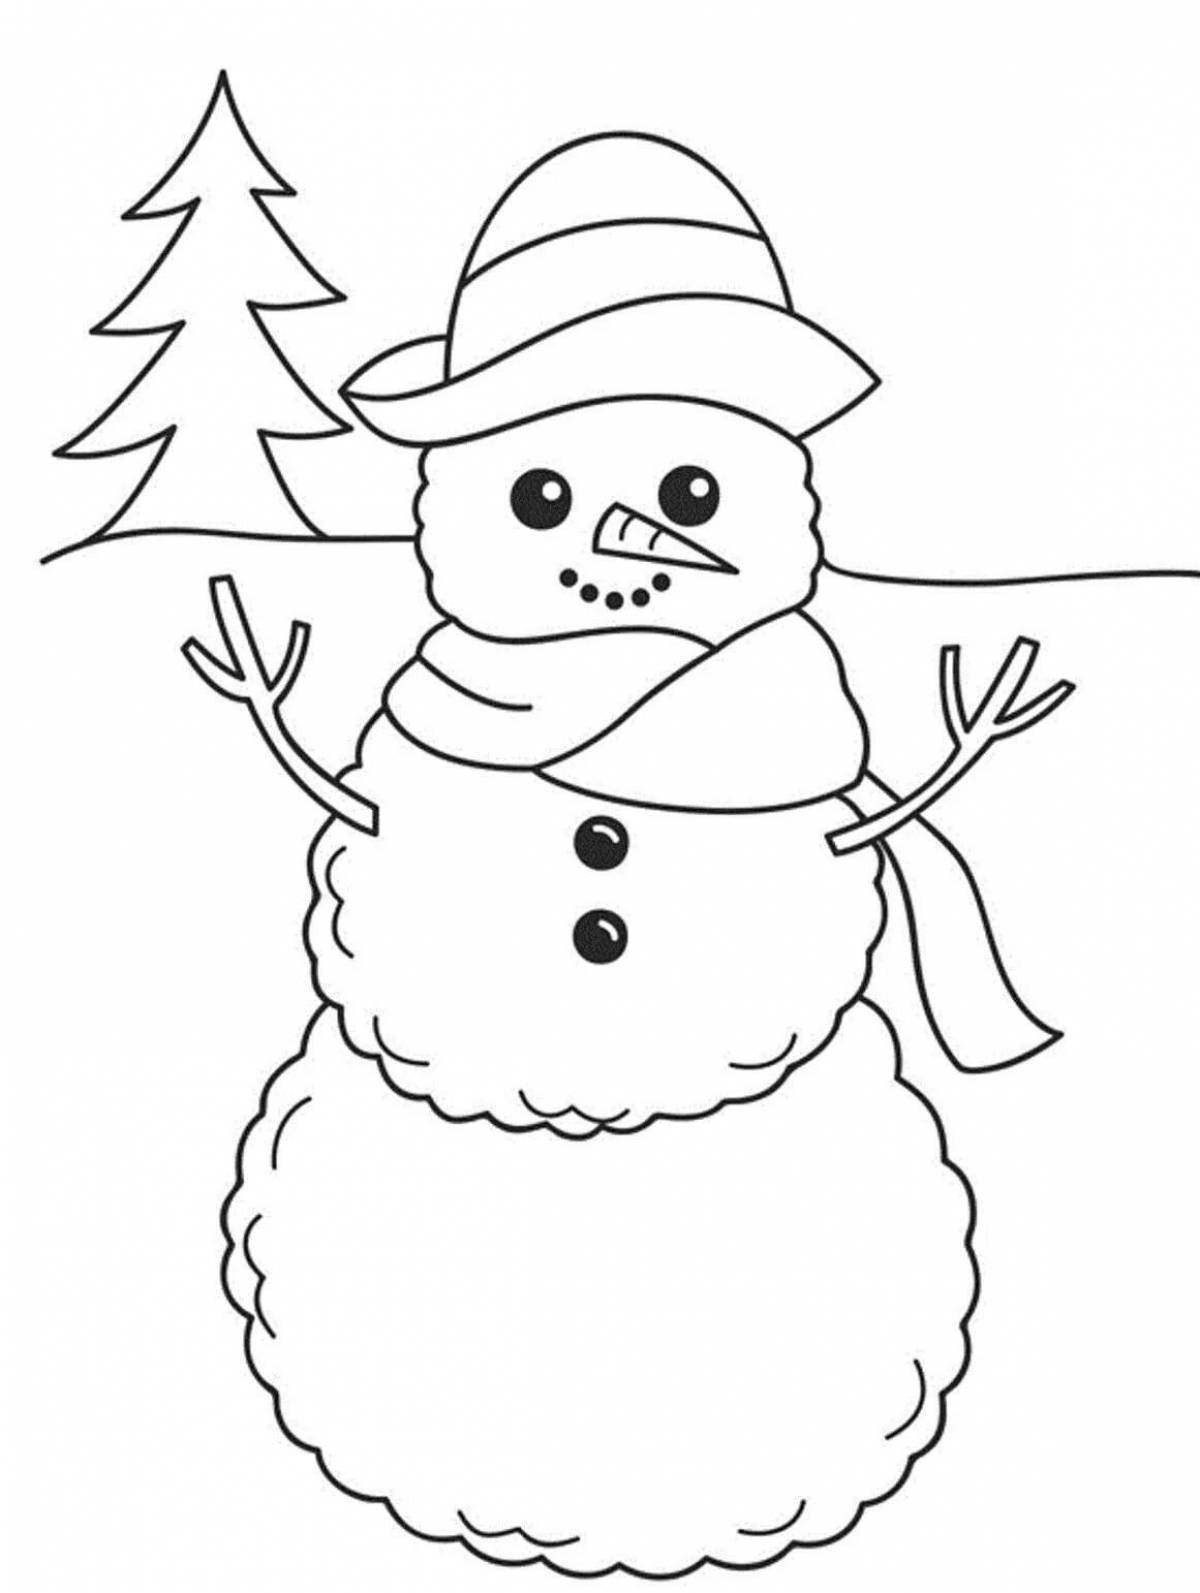 Раскраска снеговик для детей giggly